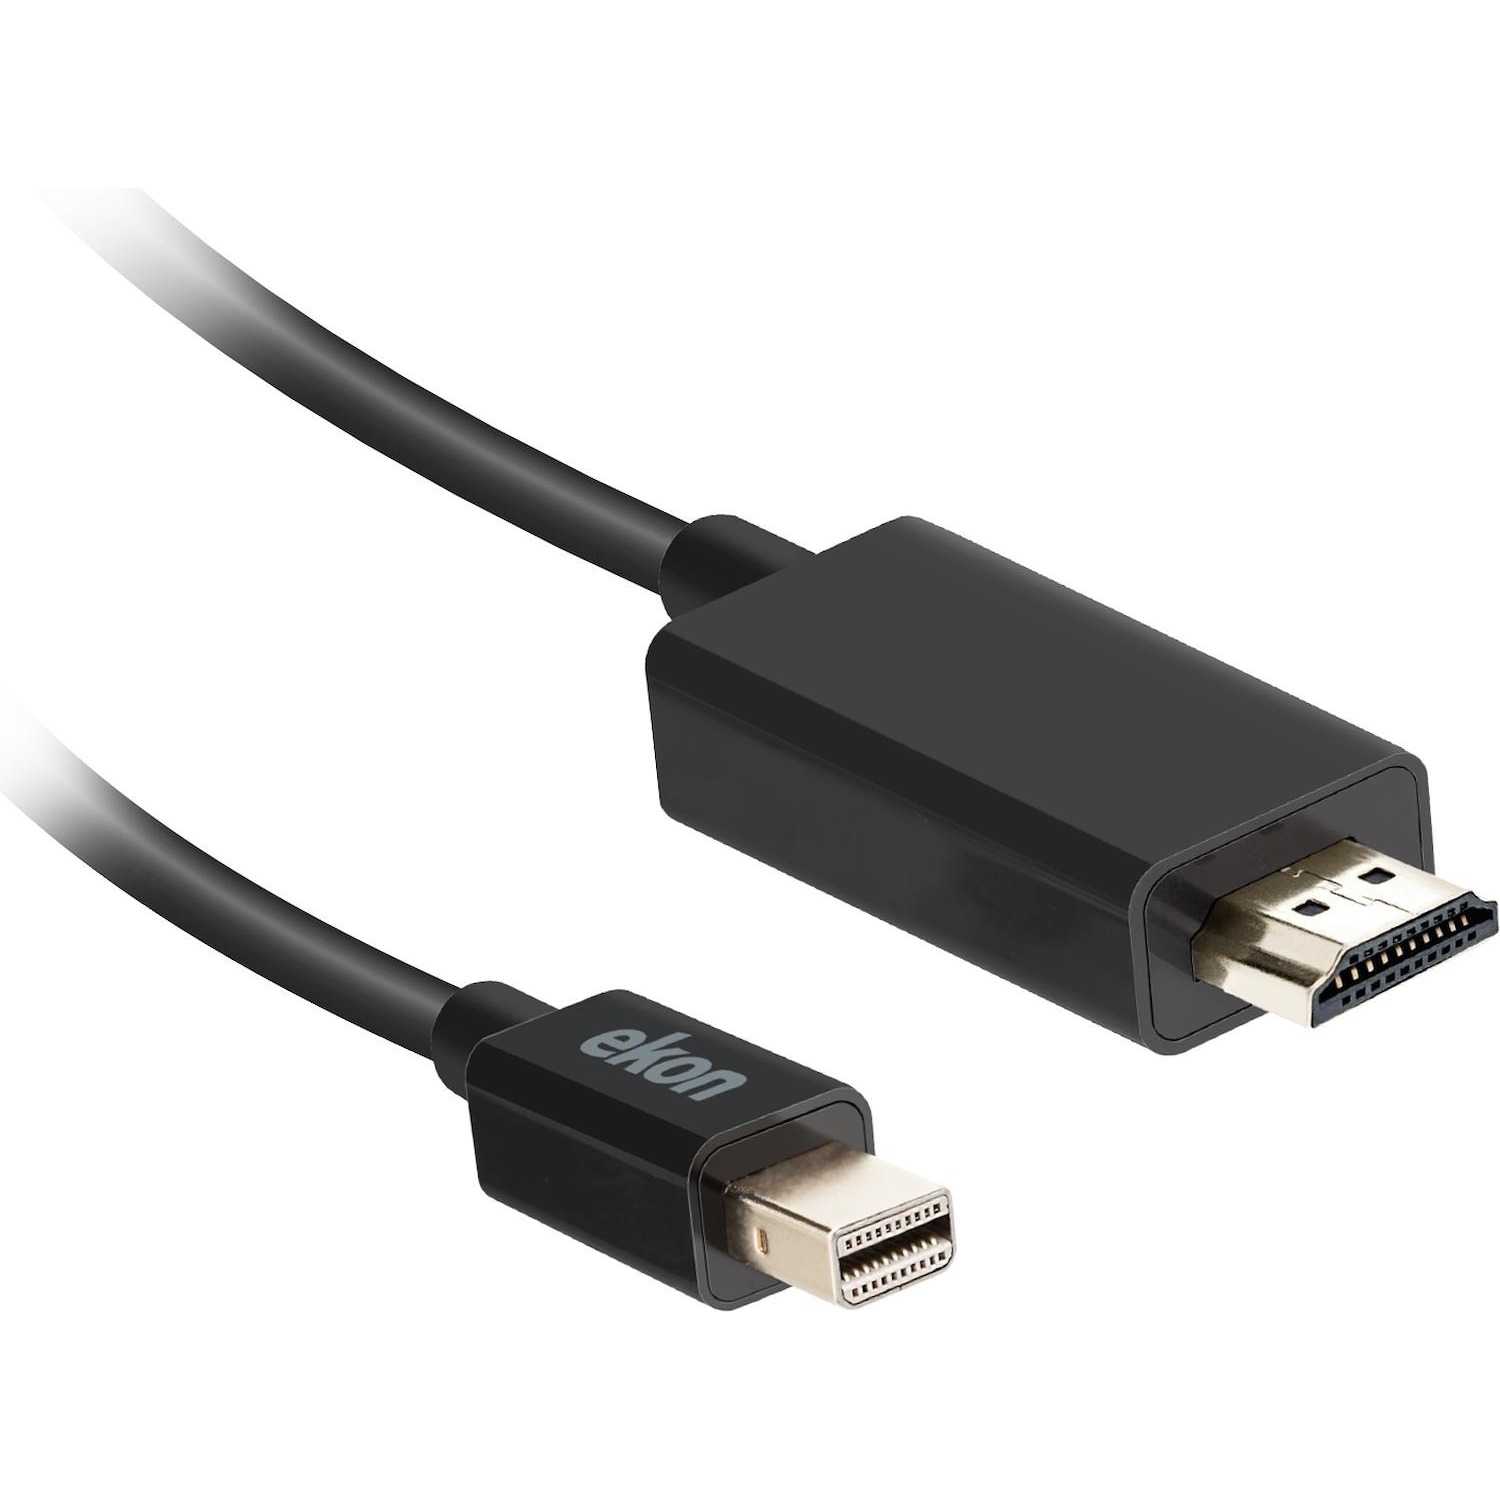 Immagine per Cavo Ekon HDMI alta velocità con ethernet - mini DP 1,8 metri colore nero da DIMOStore